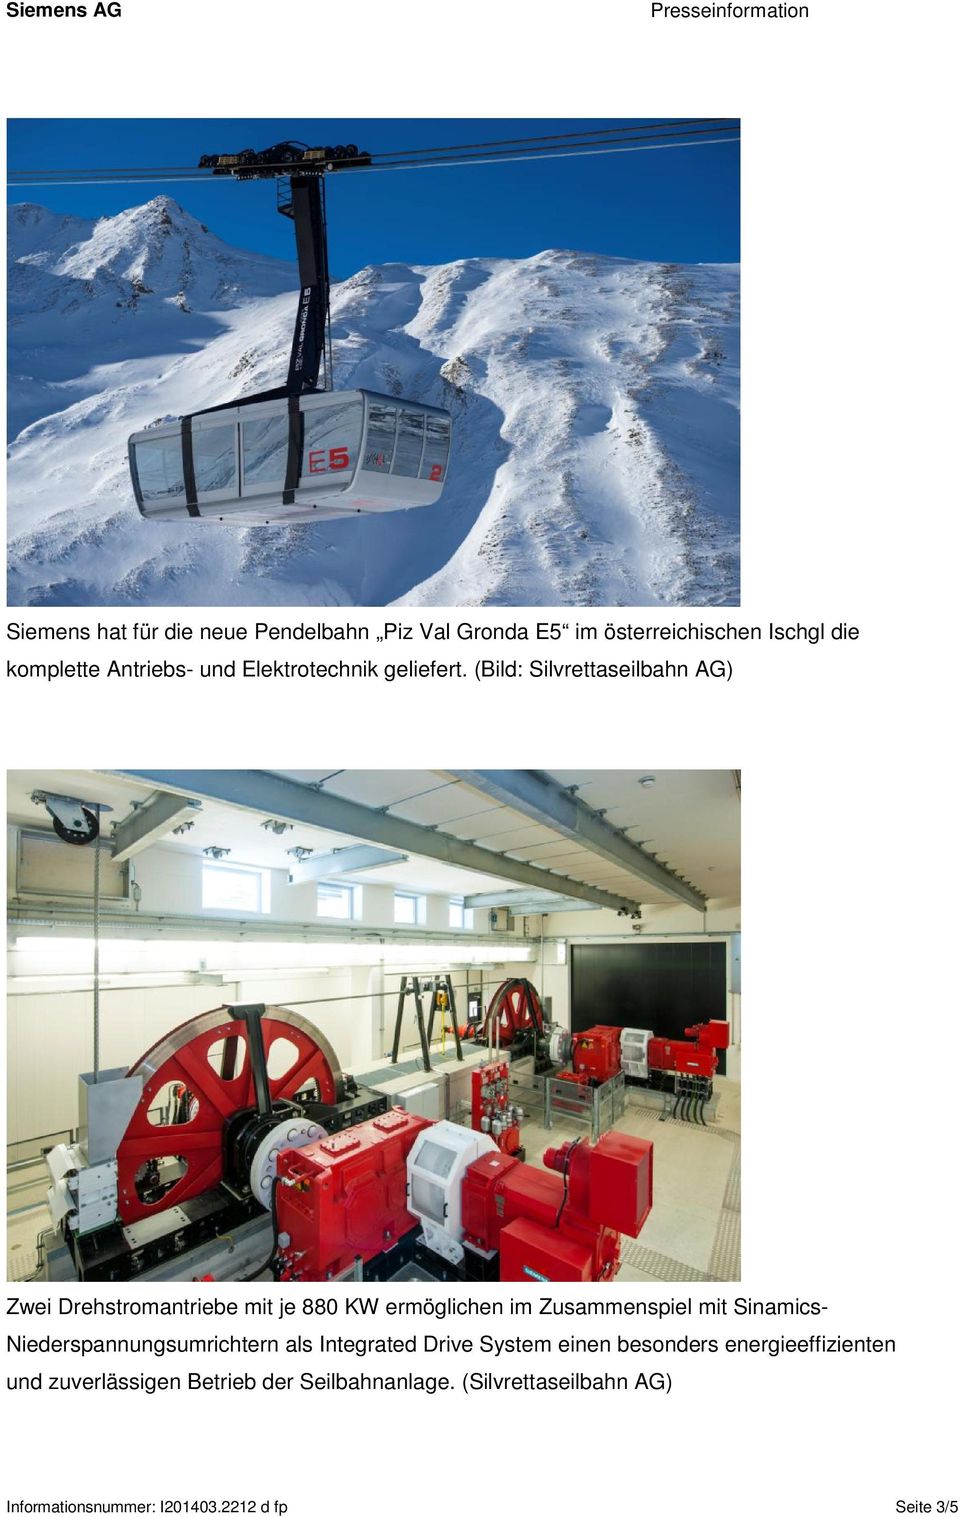 (Bild: Silvrettaseilbahn AG) Zwei Drehstromantriebe mit je 880 KW ermöglichen im Zusammenspiel mit Sinamics-